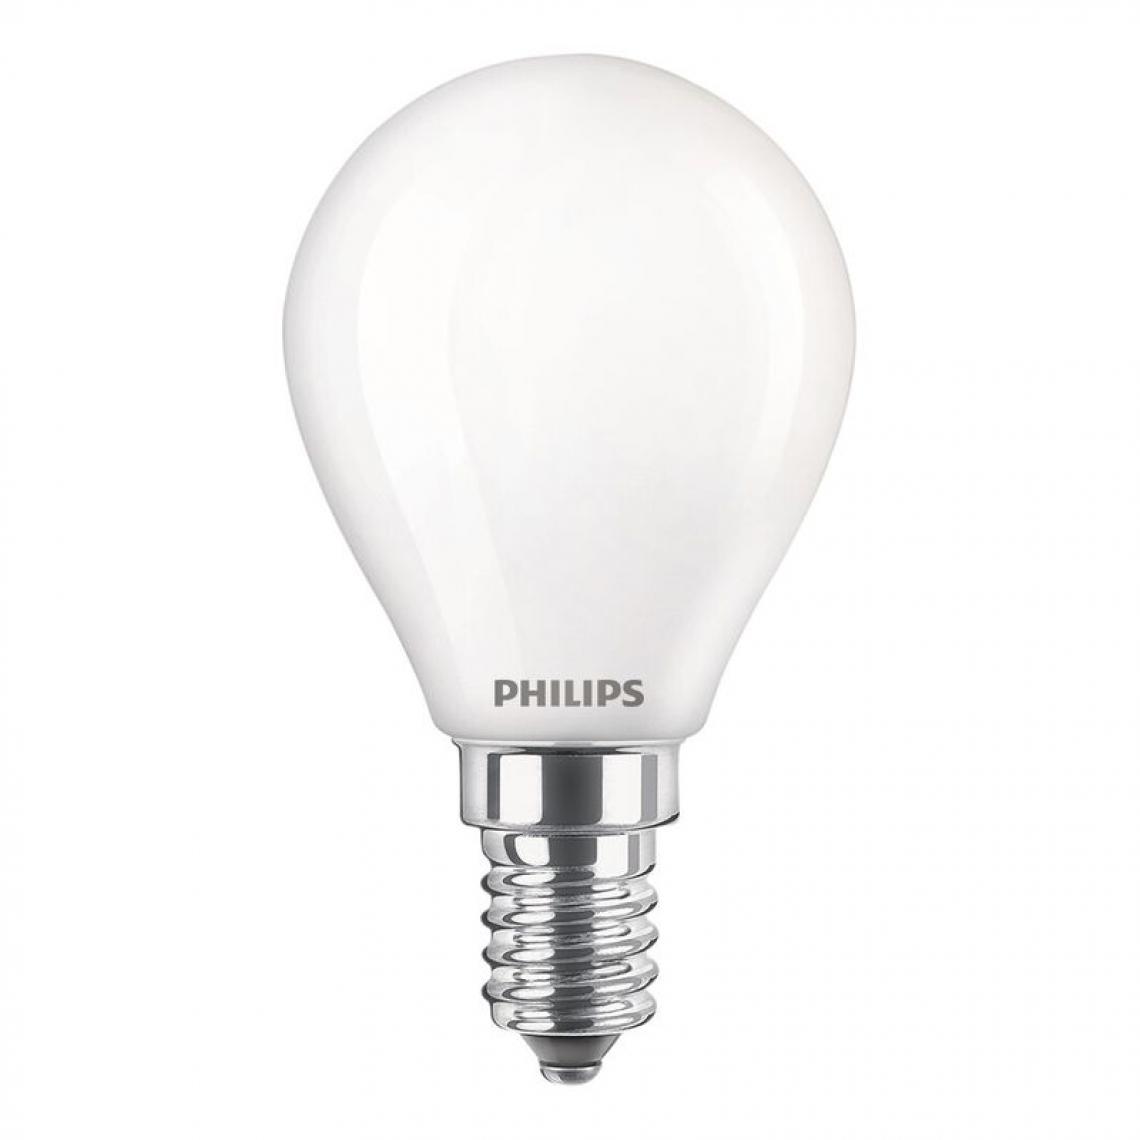 Philips - Ampoule LED sphèrique dépolie PHILIPS E14 EQ25W blanc chaud - Ampoules LED